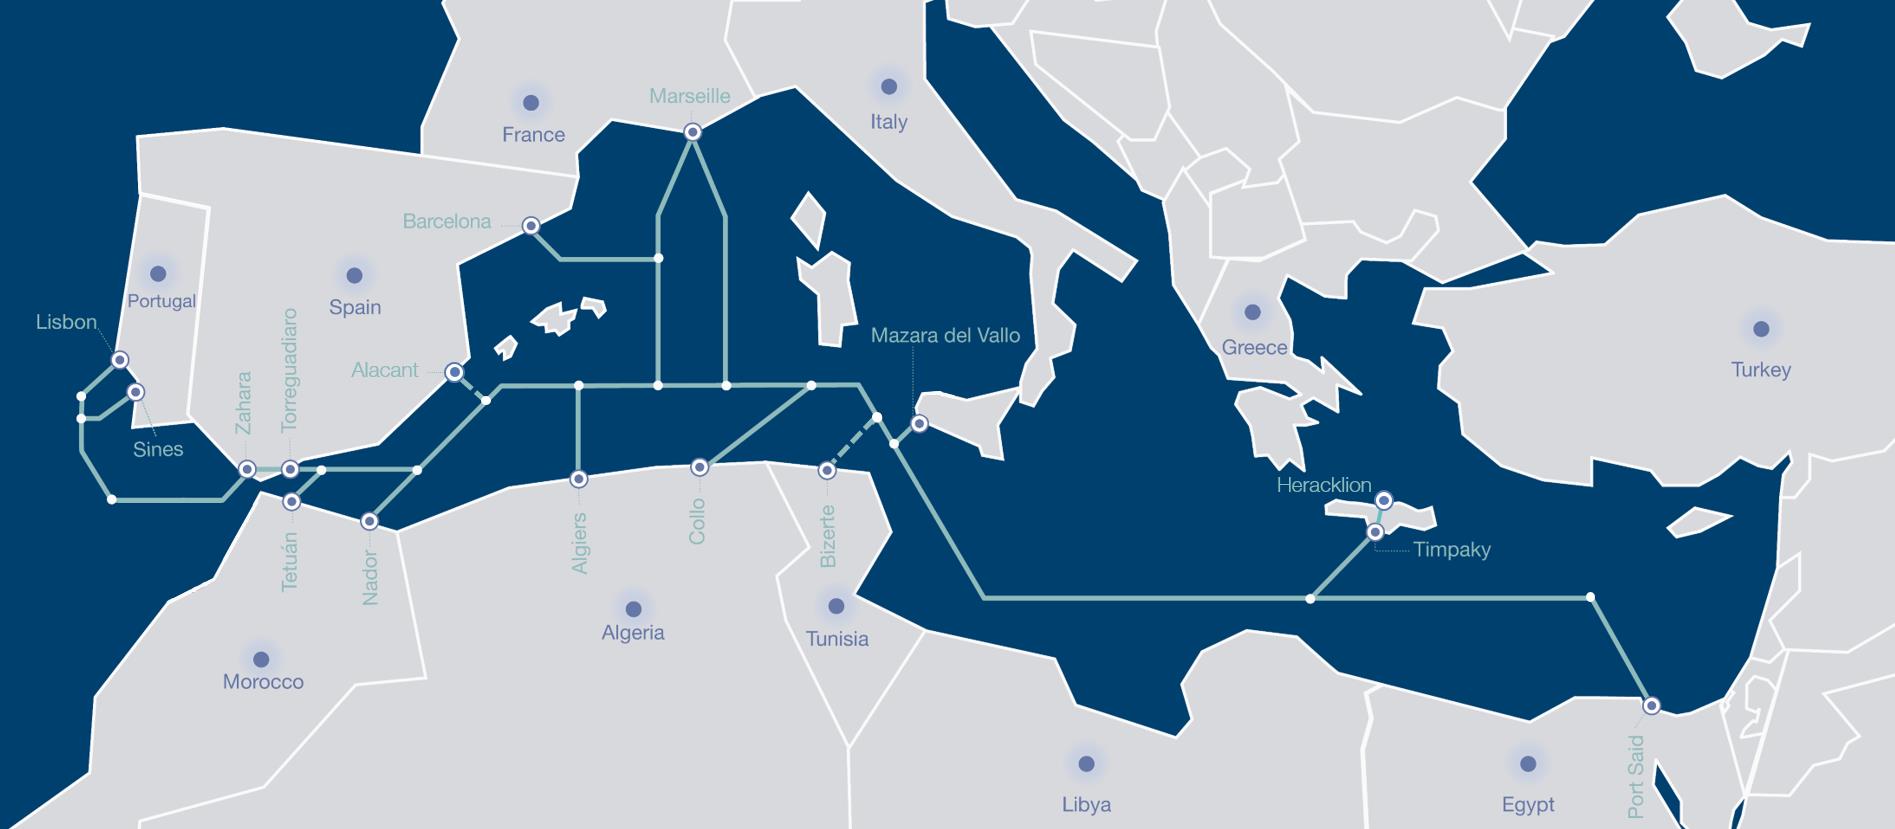 地中海Medusa海底光缆系统开建